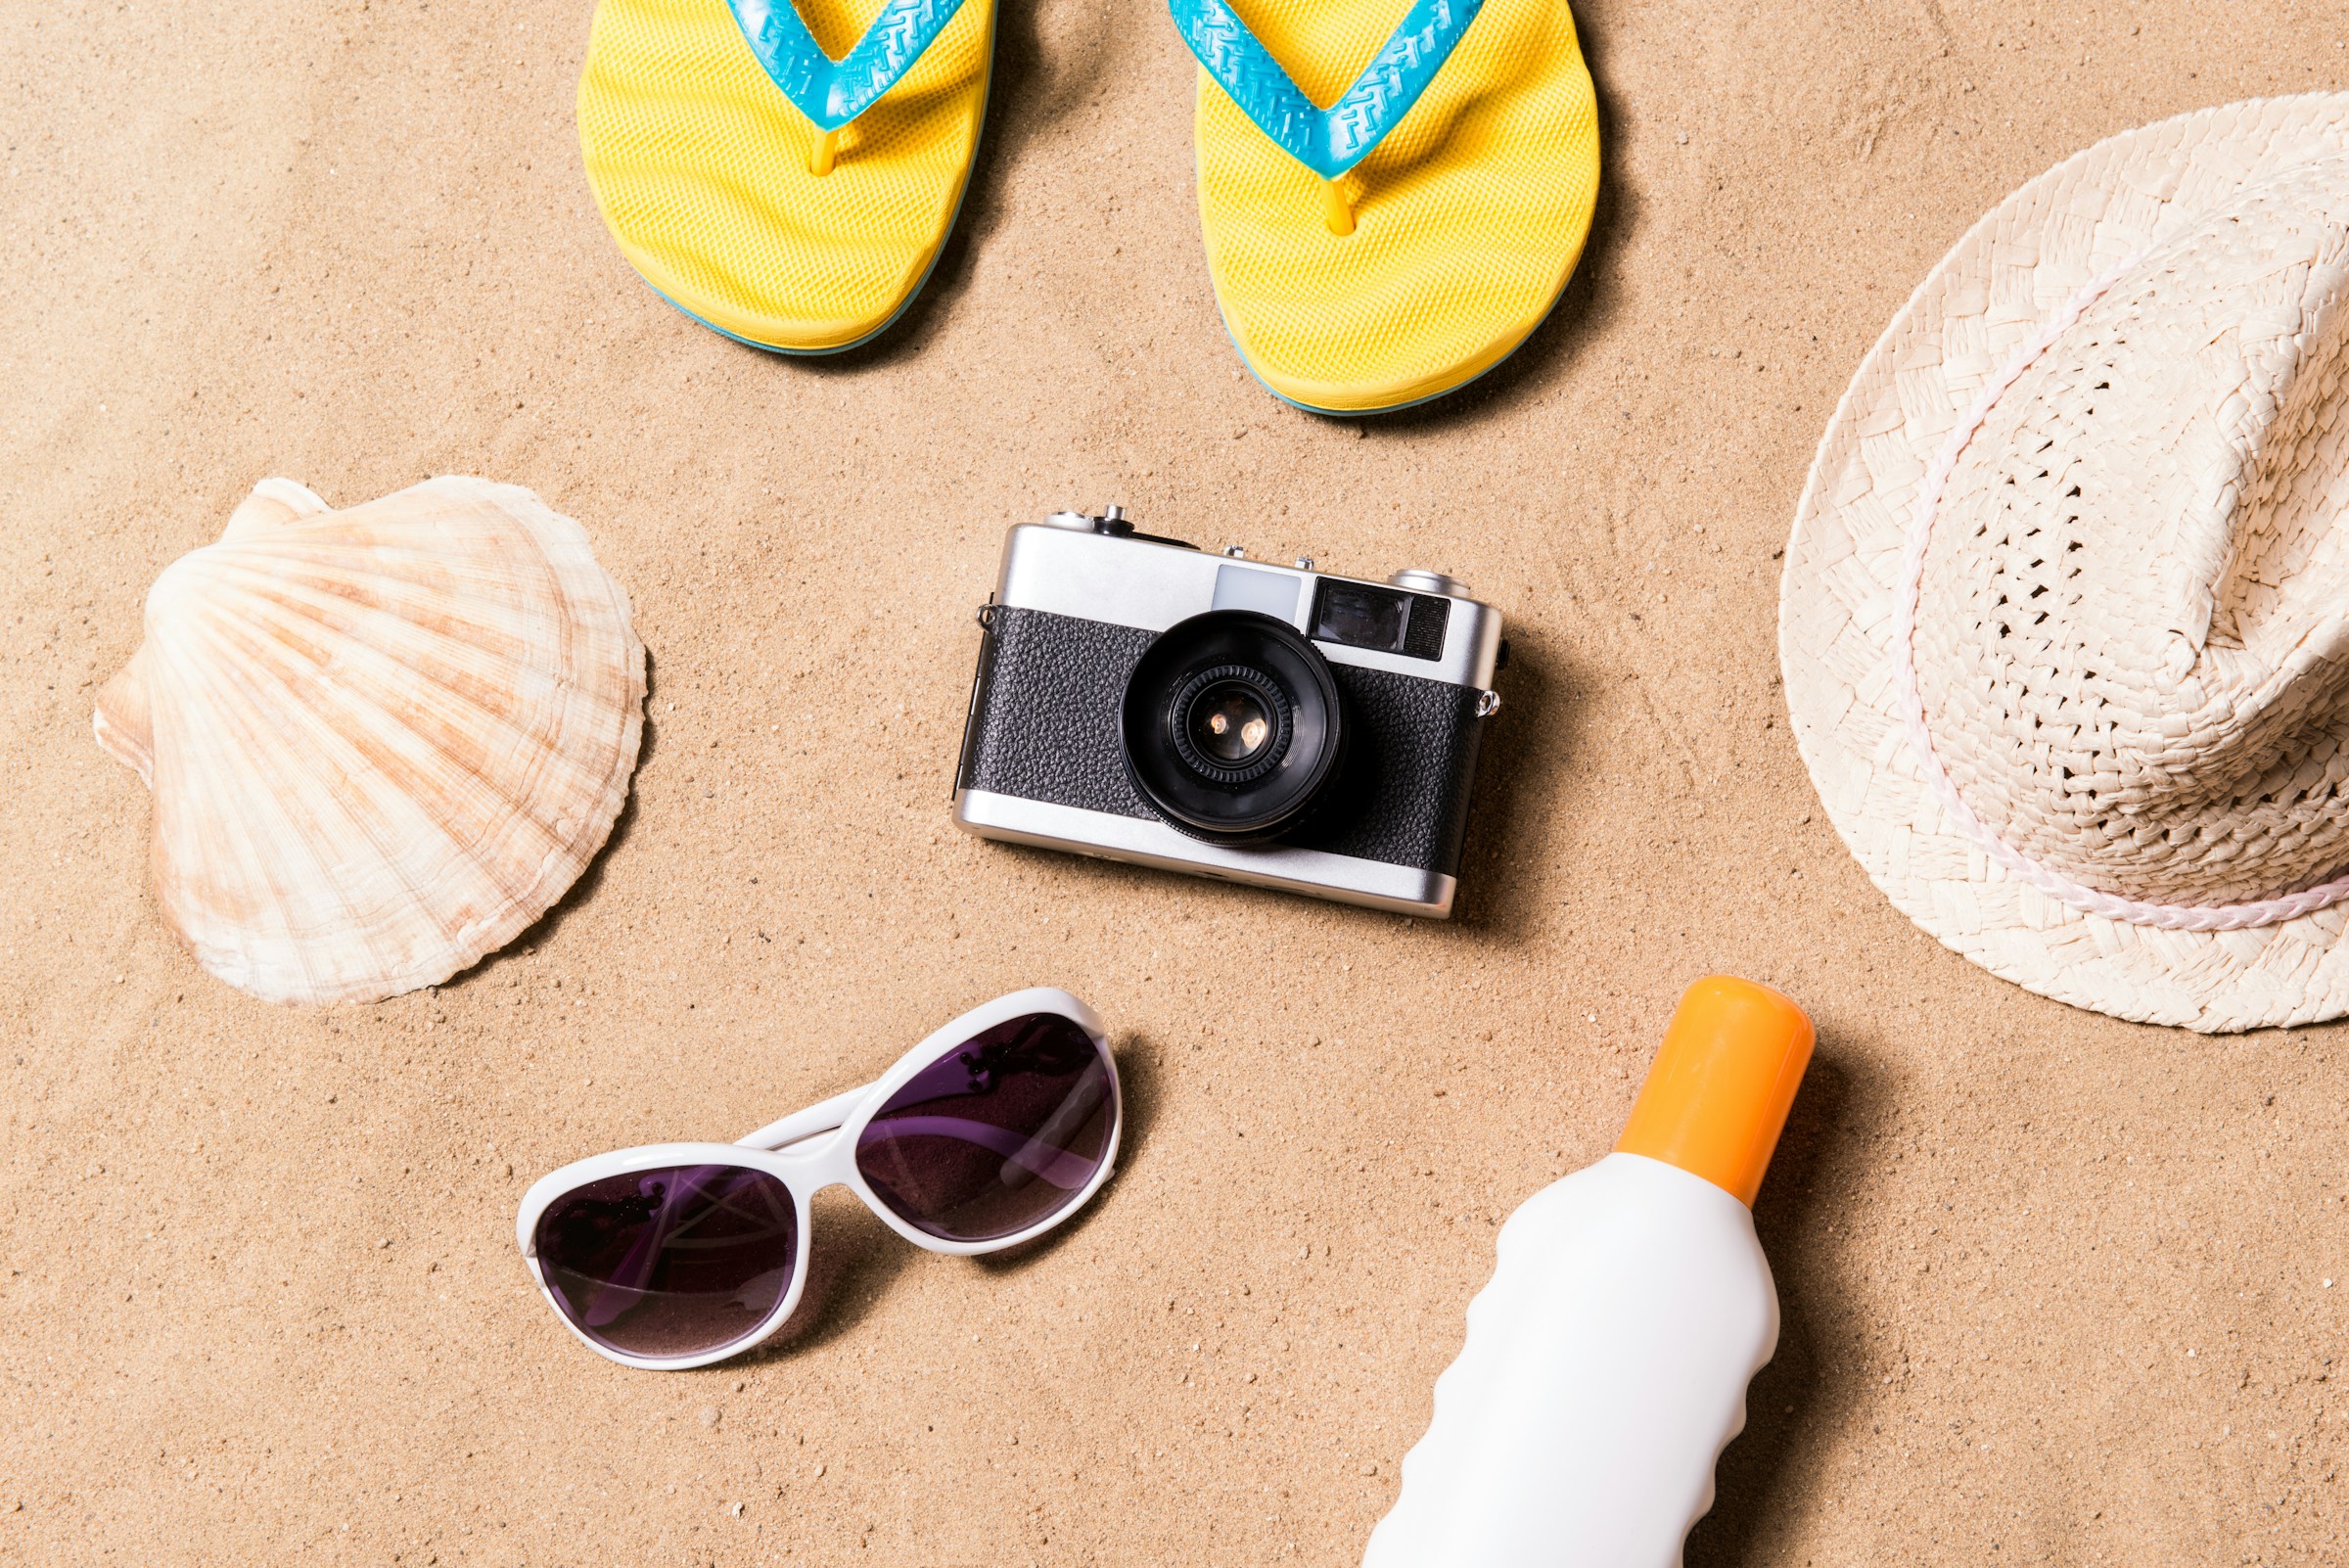 Rejseprodukter såsom en hat, kamera og solcreme på en sandstrand